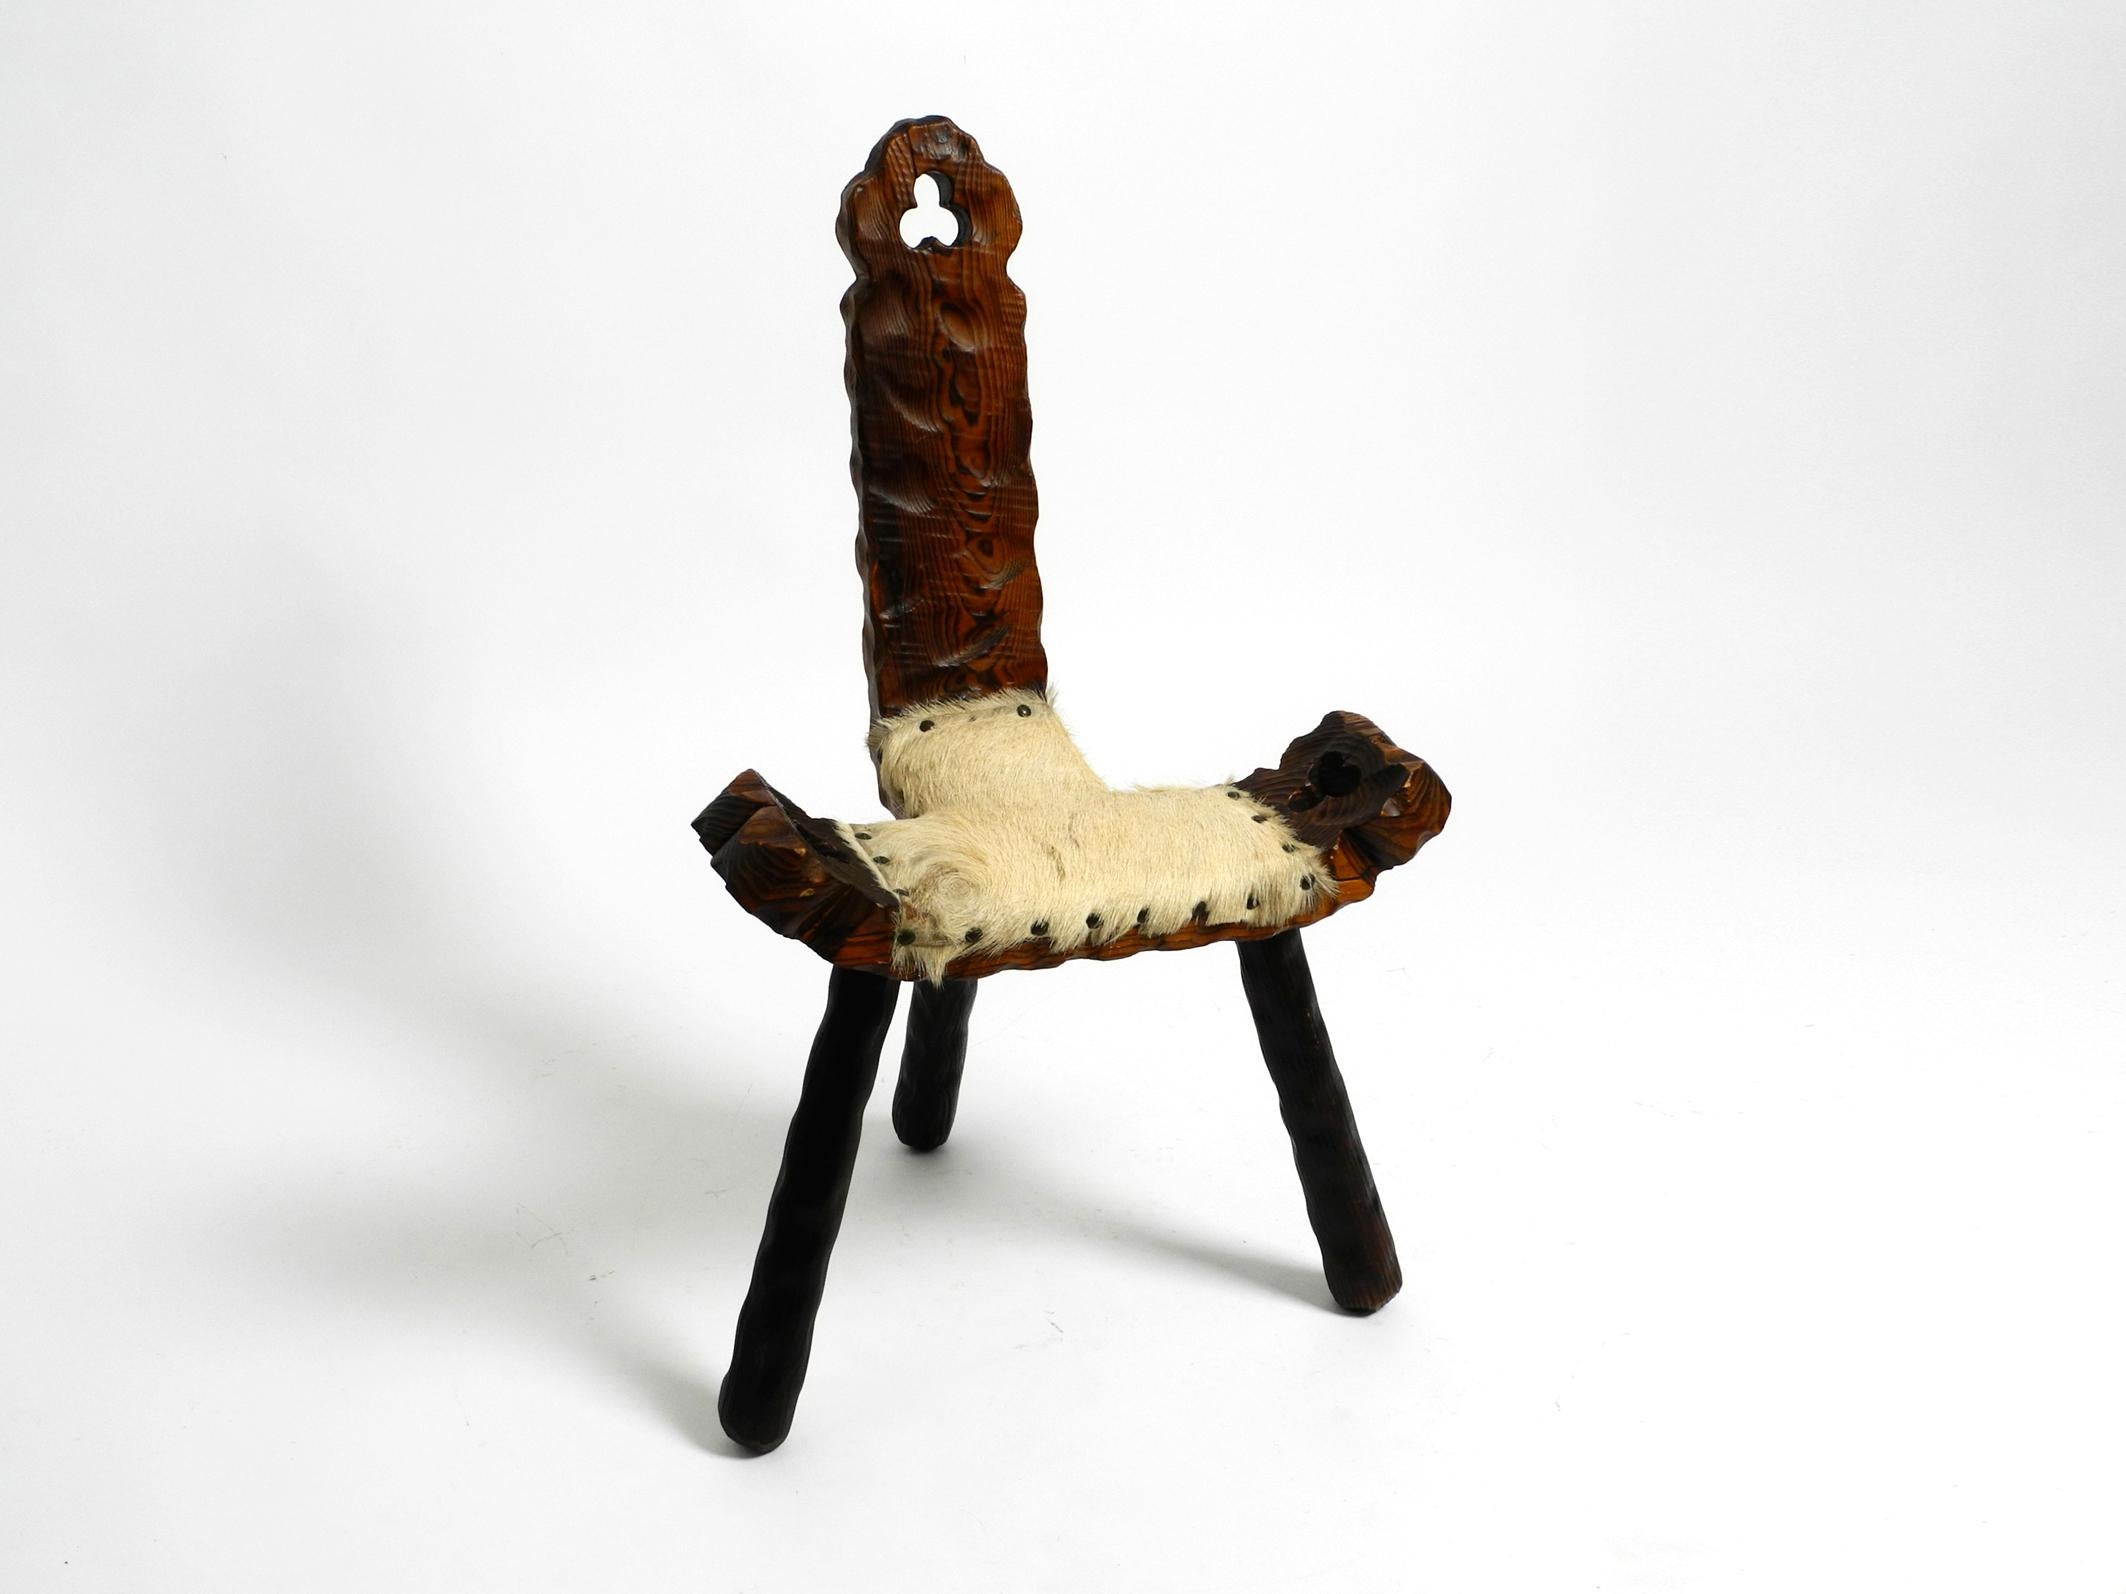 Magnifique tabouret tripode Mid Century avec dossier en bois de pin massif de couleur noir-brun.
L'assise est recouverte de cuir de vache et rivetée.
Sculpture artisanale de haute qualité avec de nombreux détails
Condition vintage intacte.
Pas de